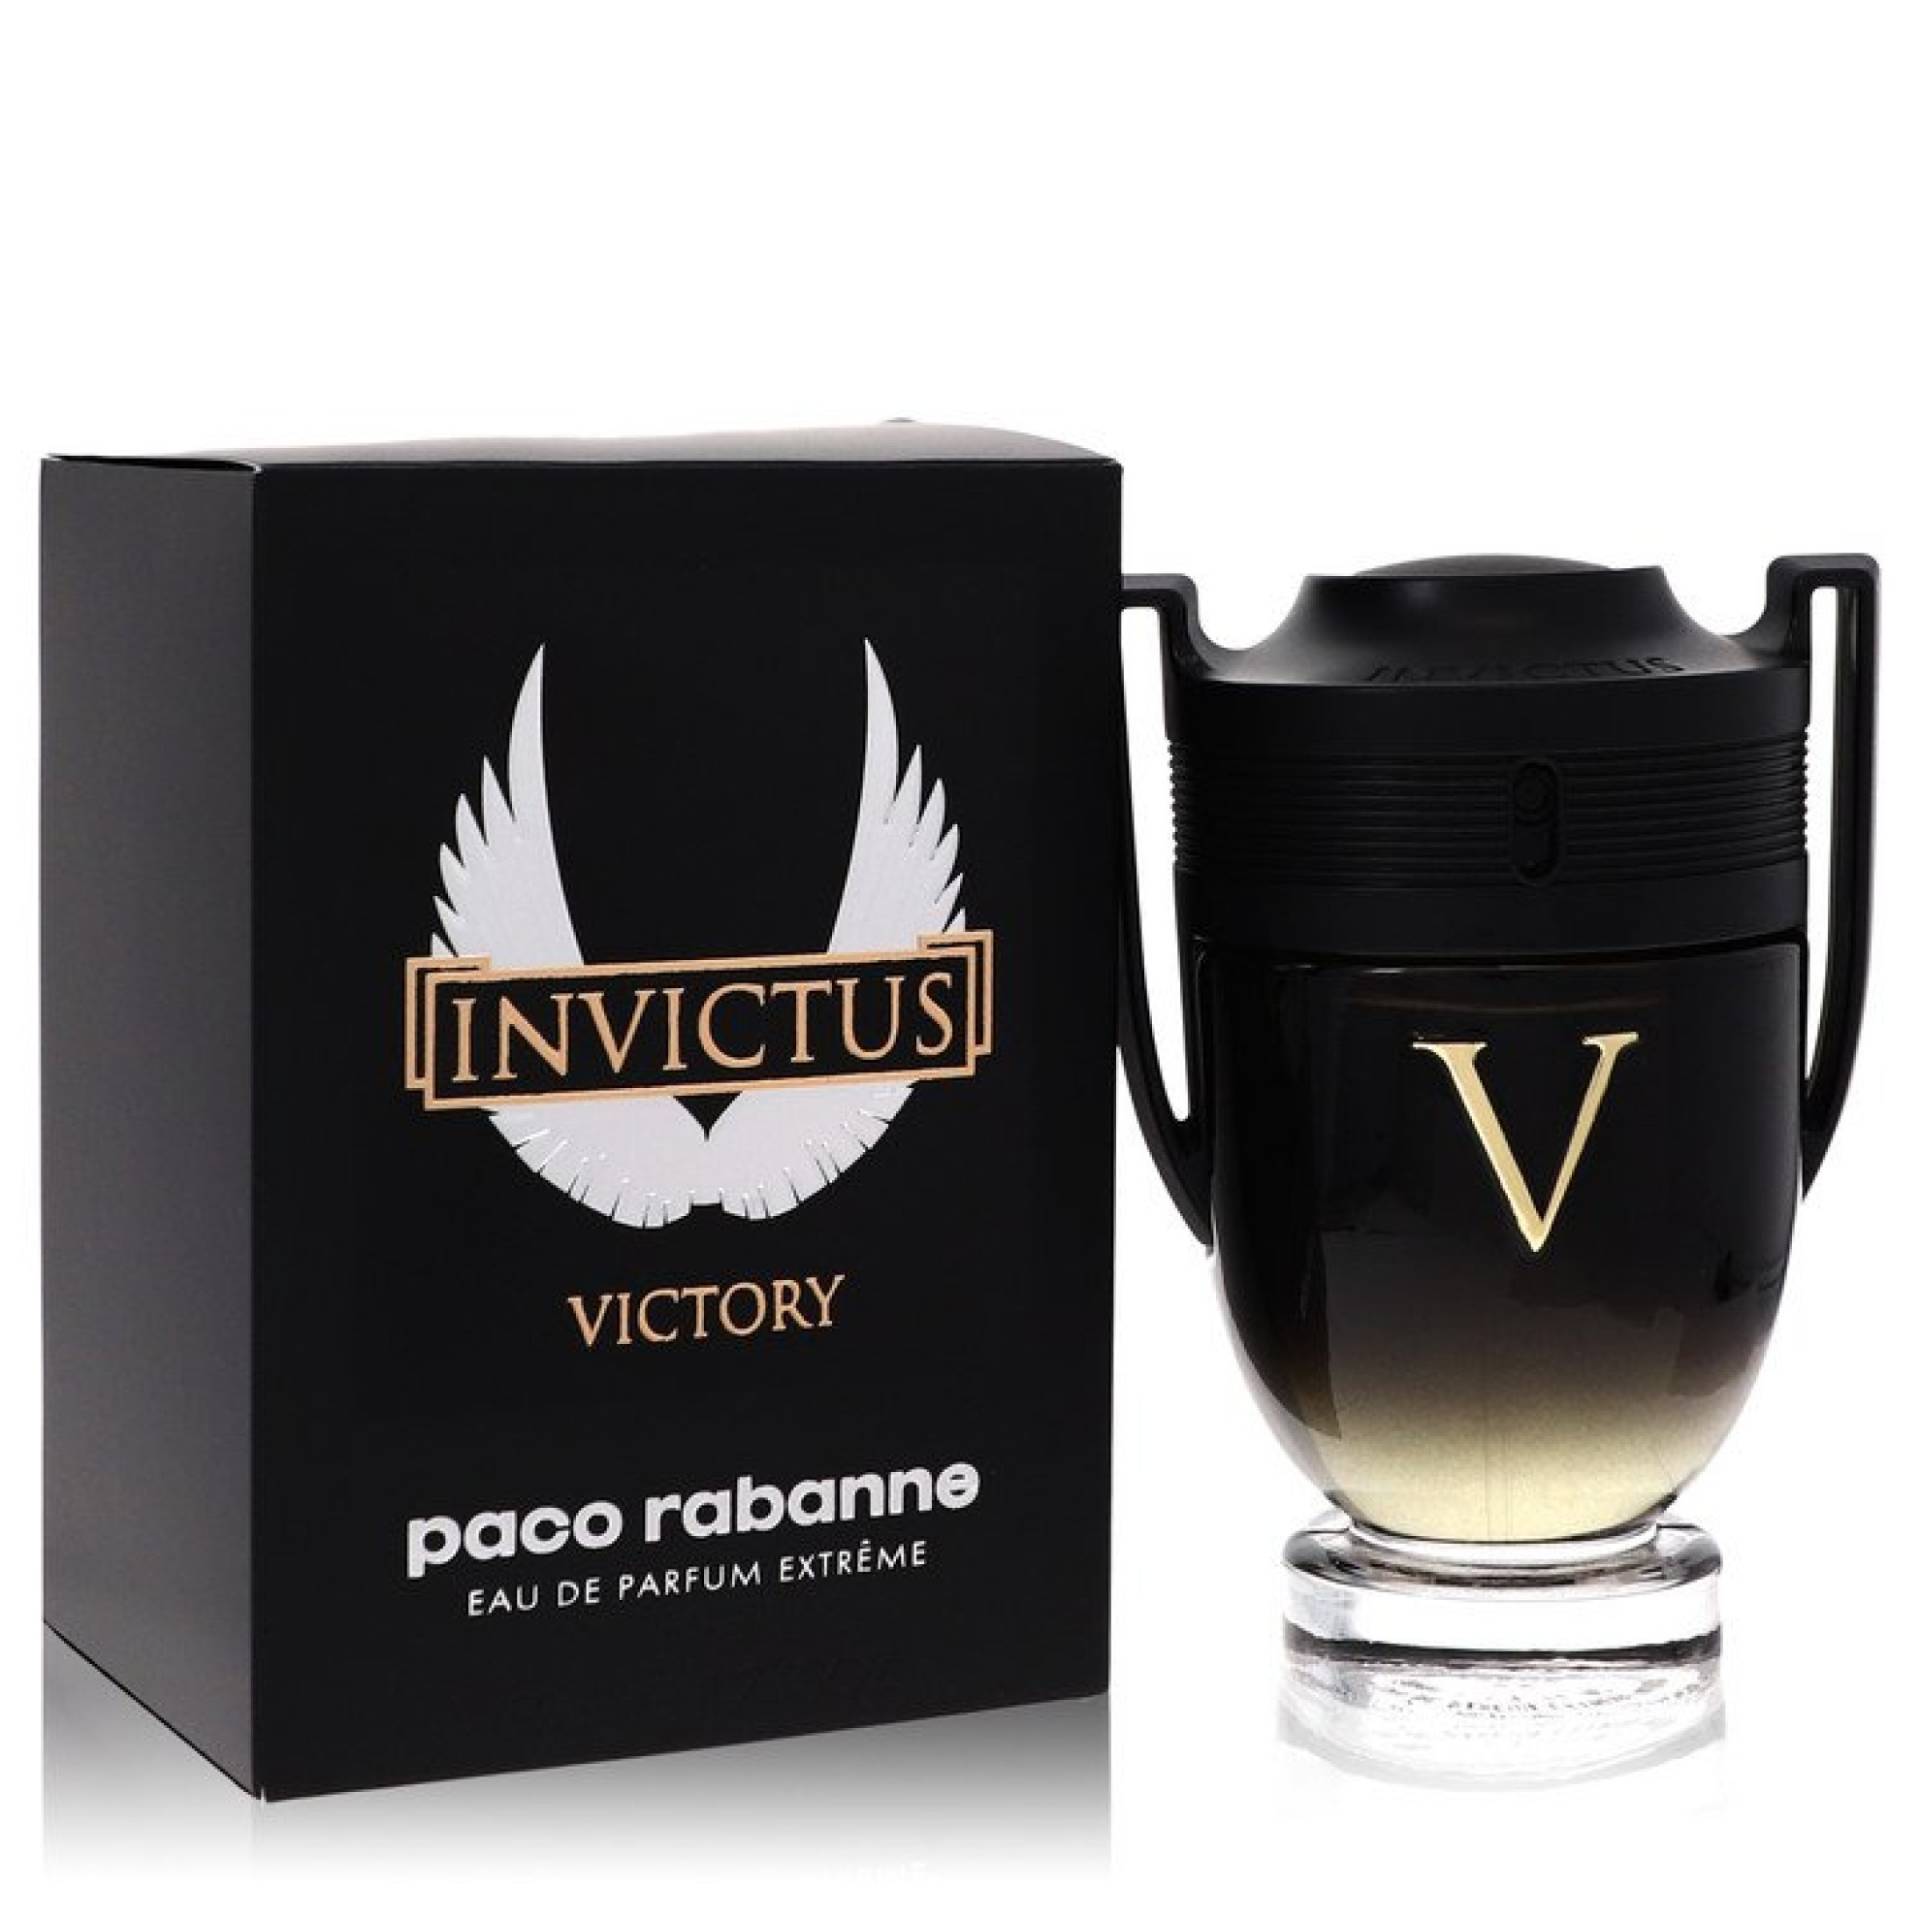 Paco Rabanne Invictus Victory Eau De Parfum Extreme Spray 51 ml von Paco Rabanne